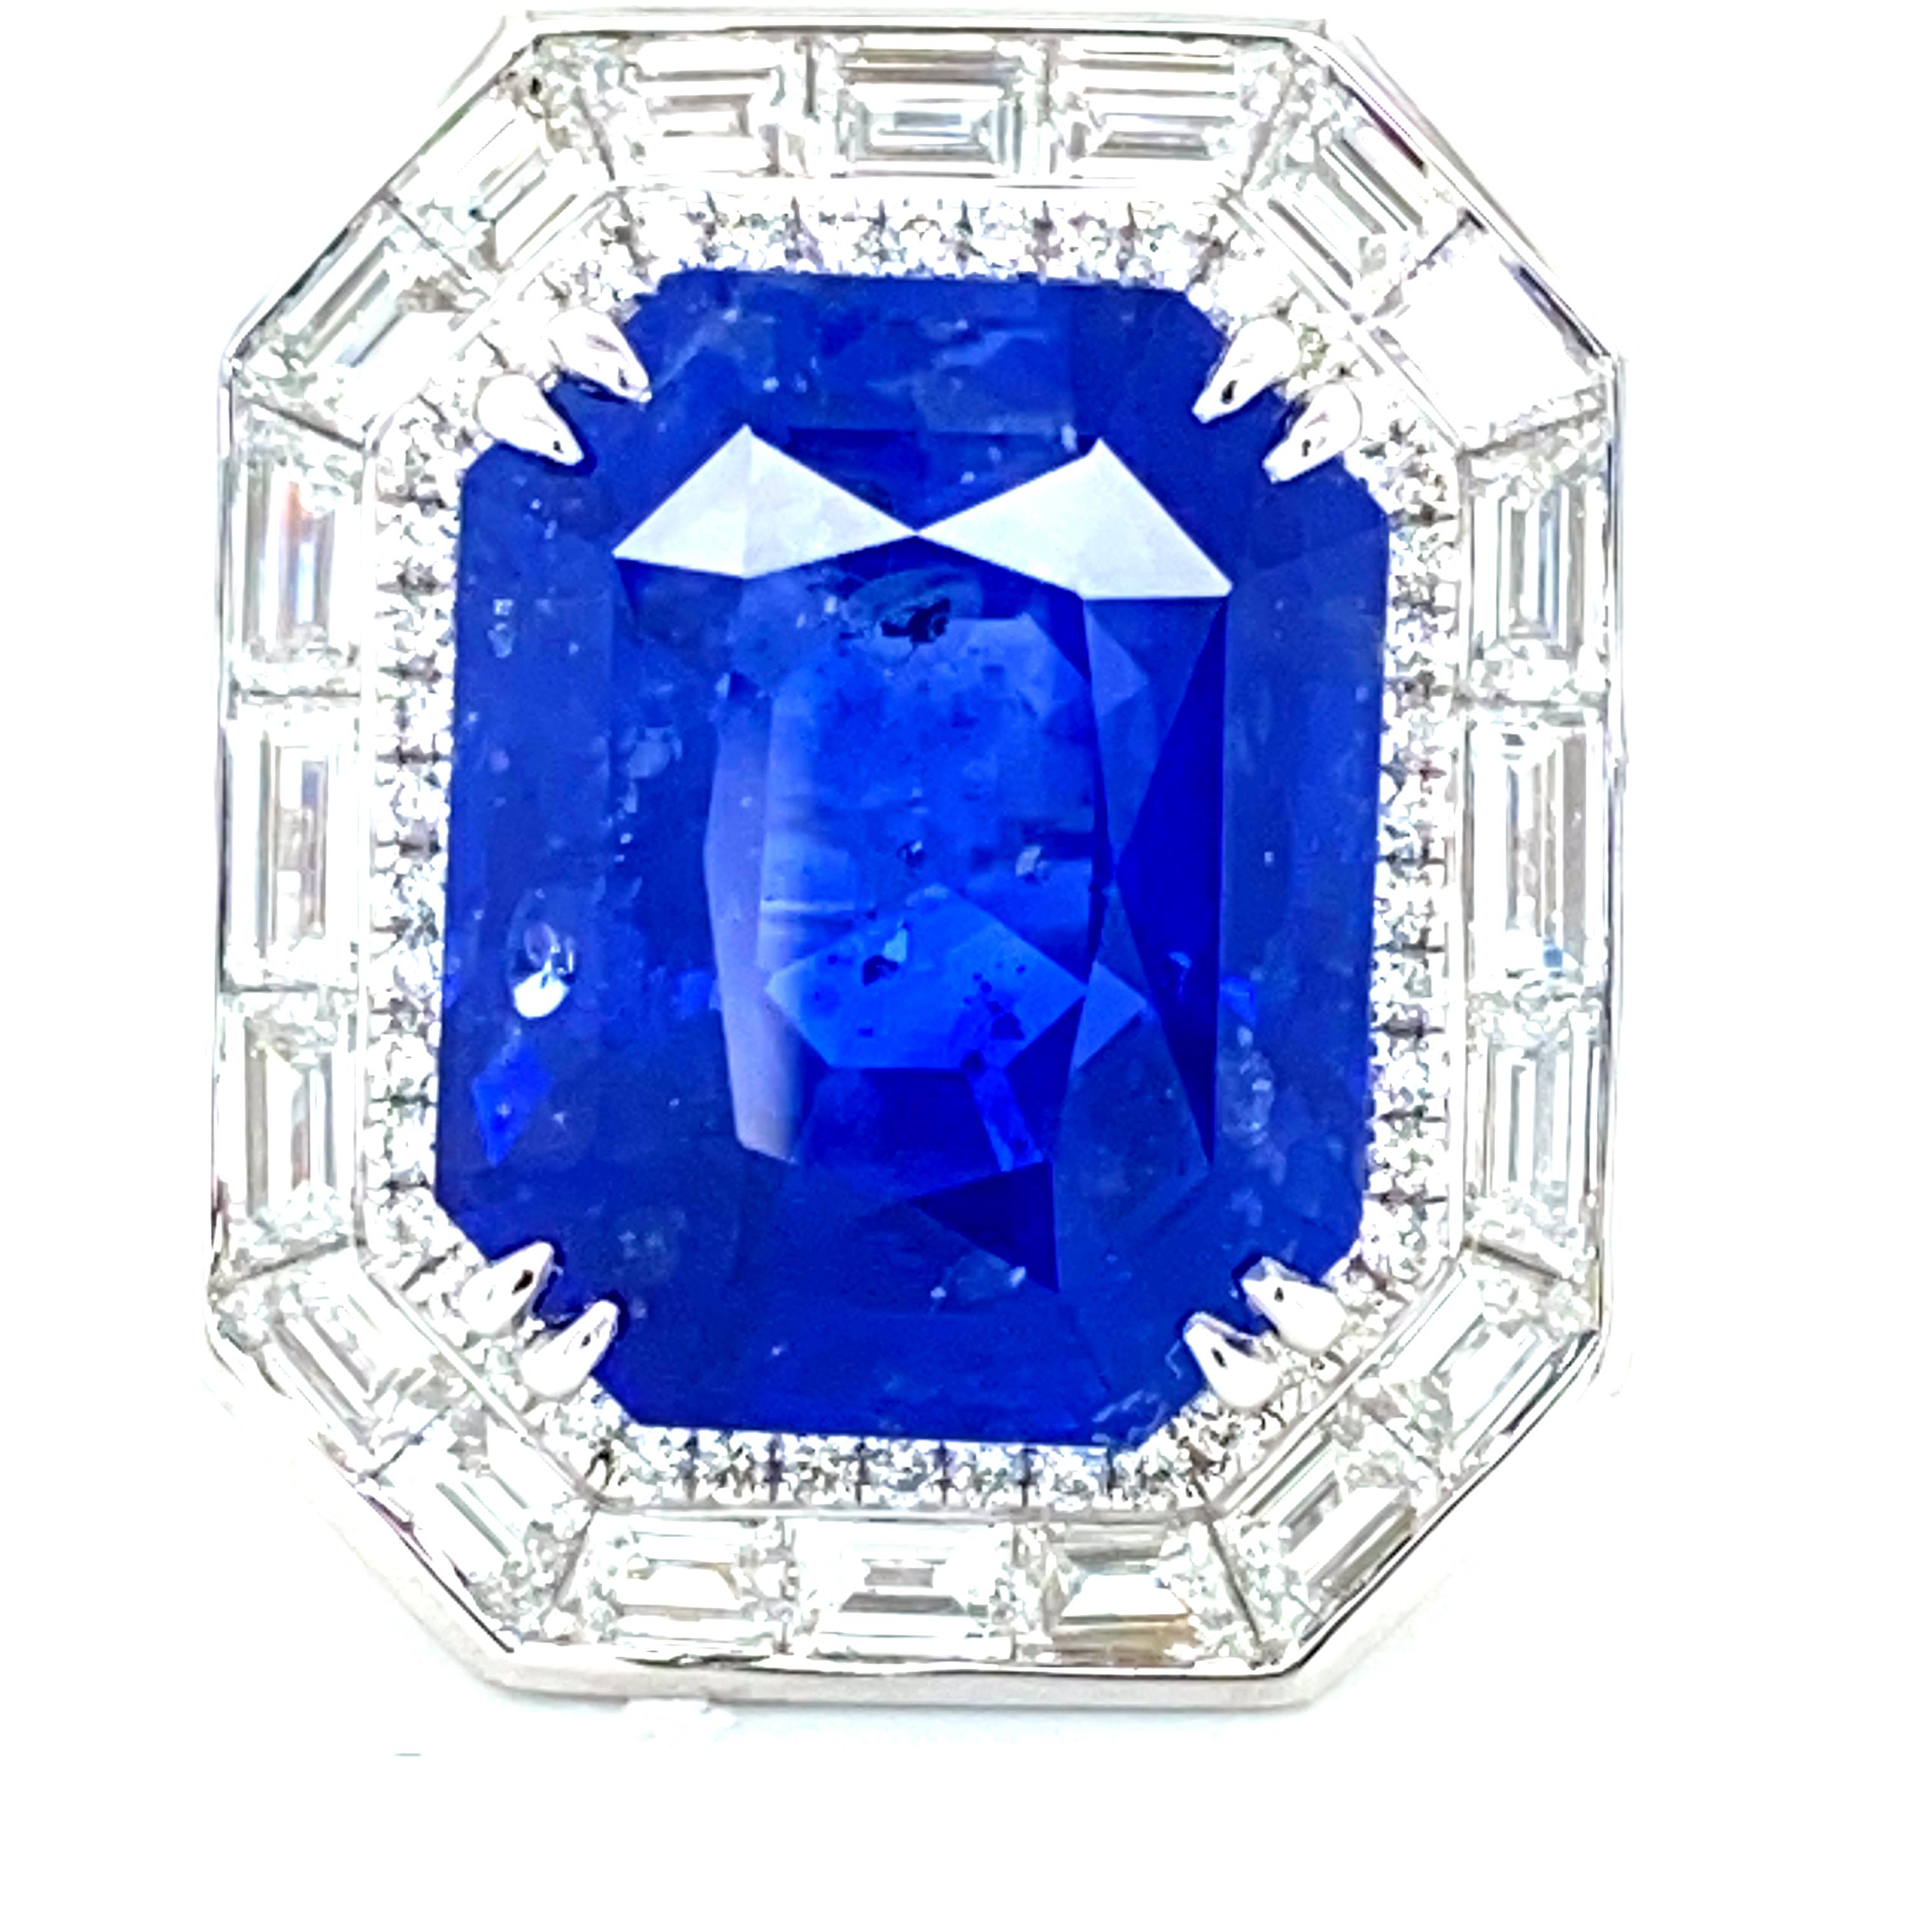 22.43 Karat GRS-zertifizierter Ring aus Gold mit kornblumenblauem Saphir und weißem Diamant:

Ein seltener Fund! Dieser wunderschön gearbeitete und gestaltete Ring ist mit einem großen und seltenen Saphir von 22,43 Karat besetzt, der vom GRS-Labor